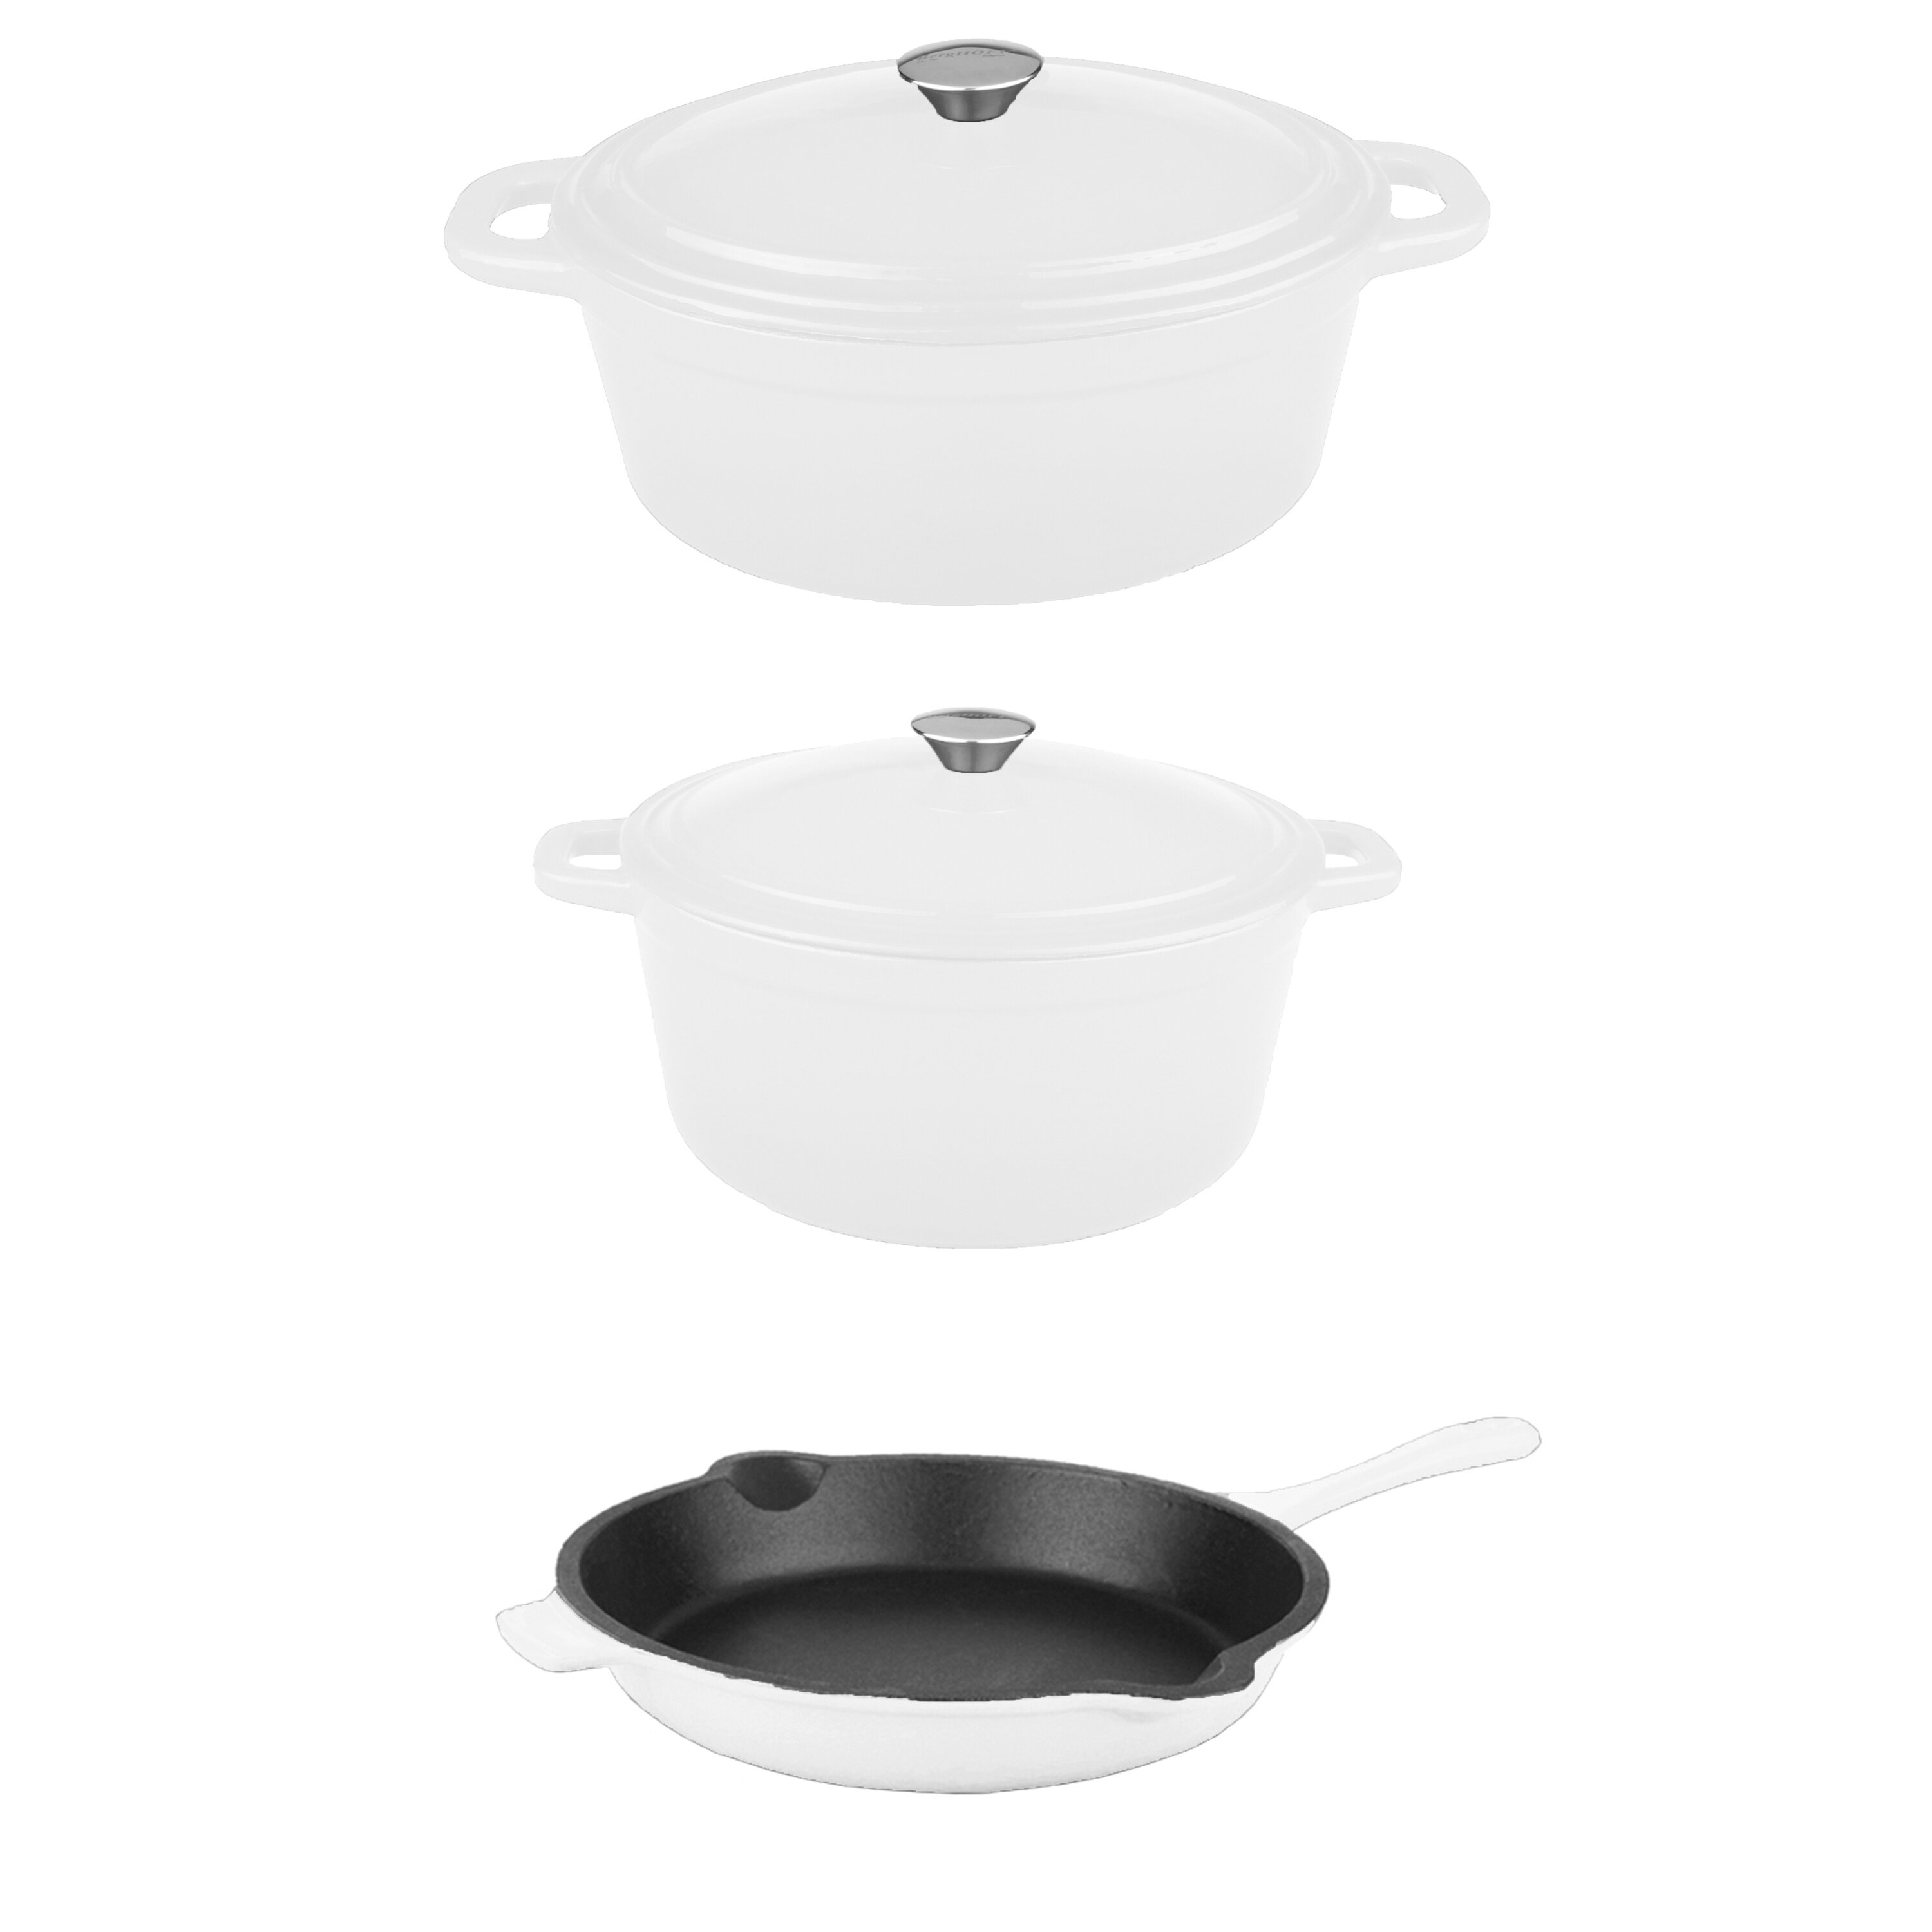 https://assets.wfcdn.com/im/68163116/compr-r85/1345/134588546/berghoff-international-neo-5-piece-cast-iron-cookware-set.jpg